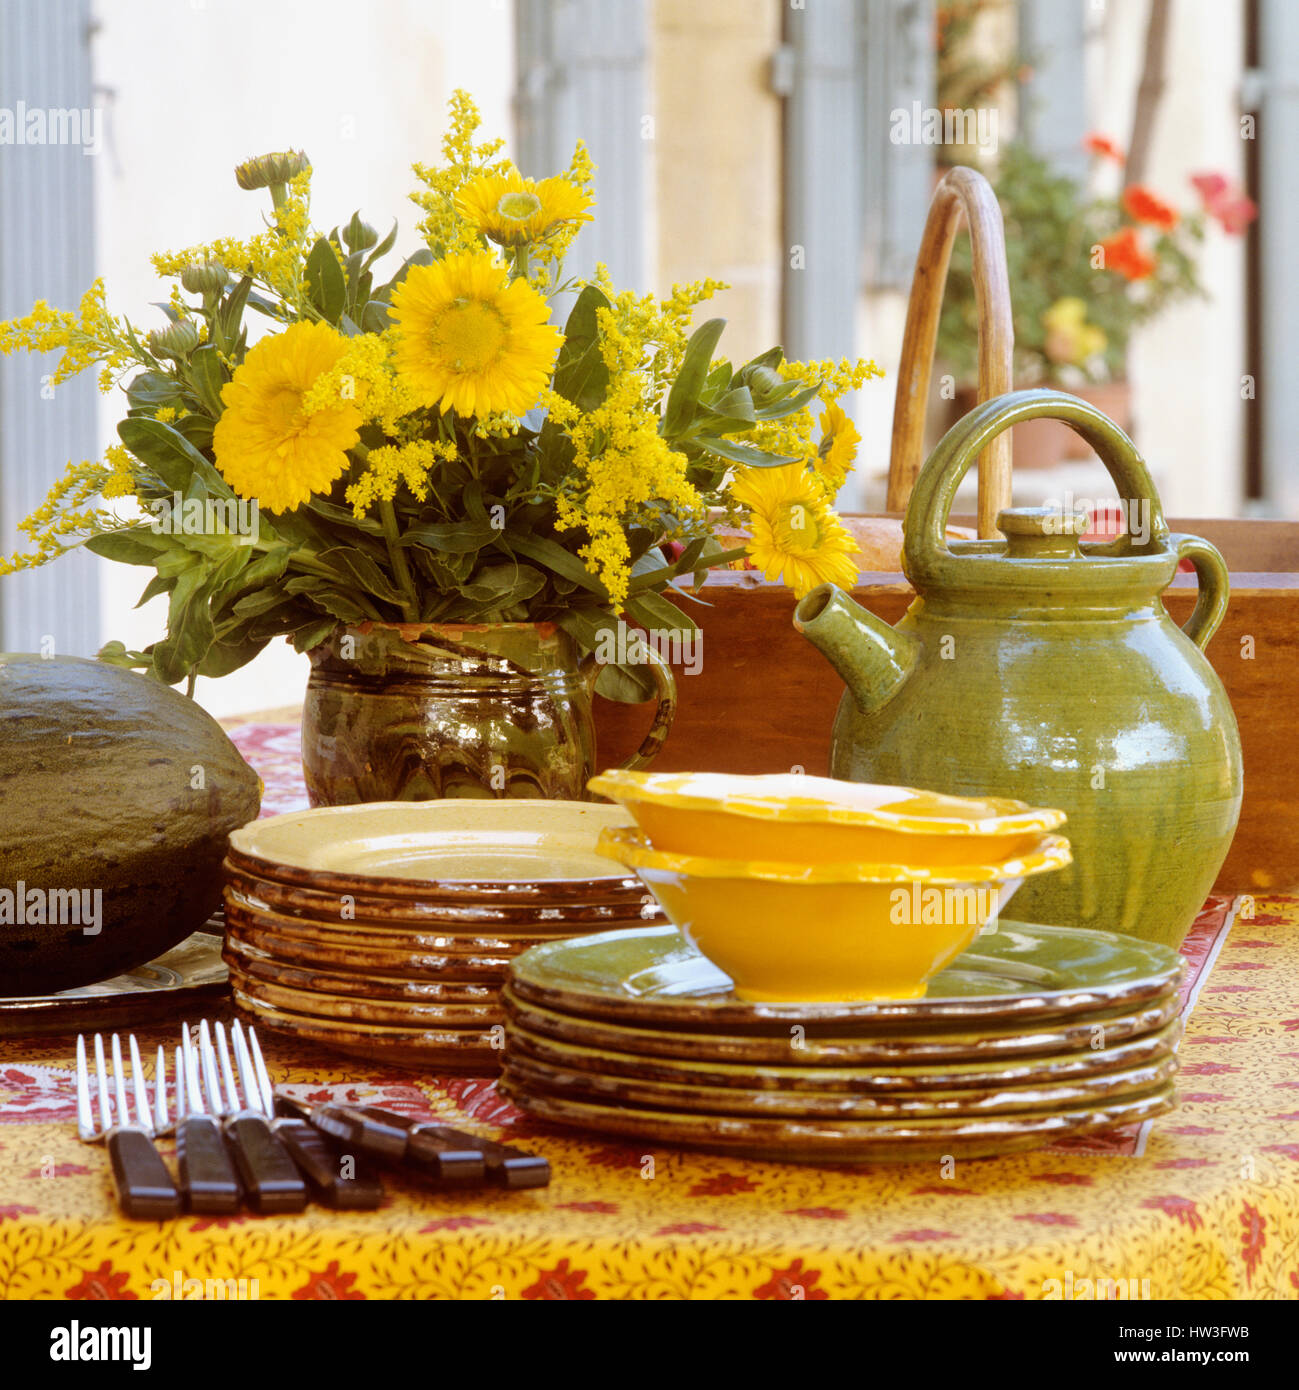 Geschirr und Besteck neben Vase mit Blumen. Stockfoto